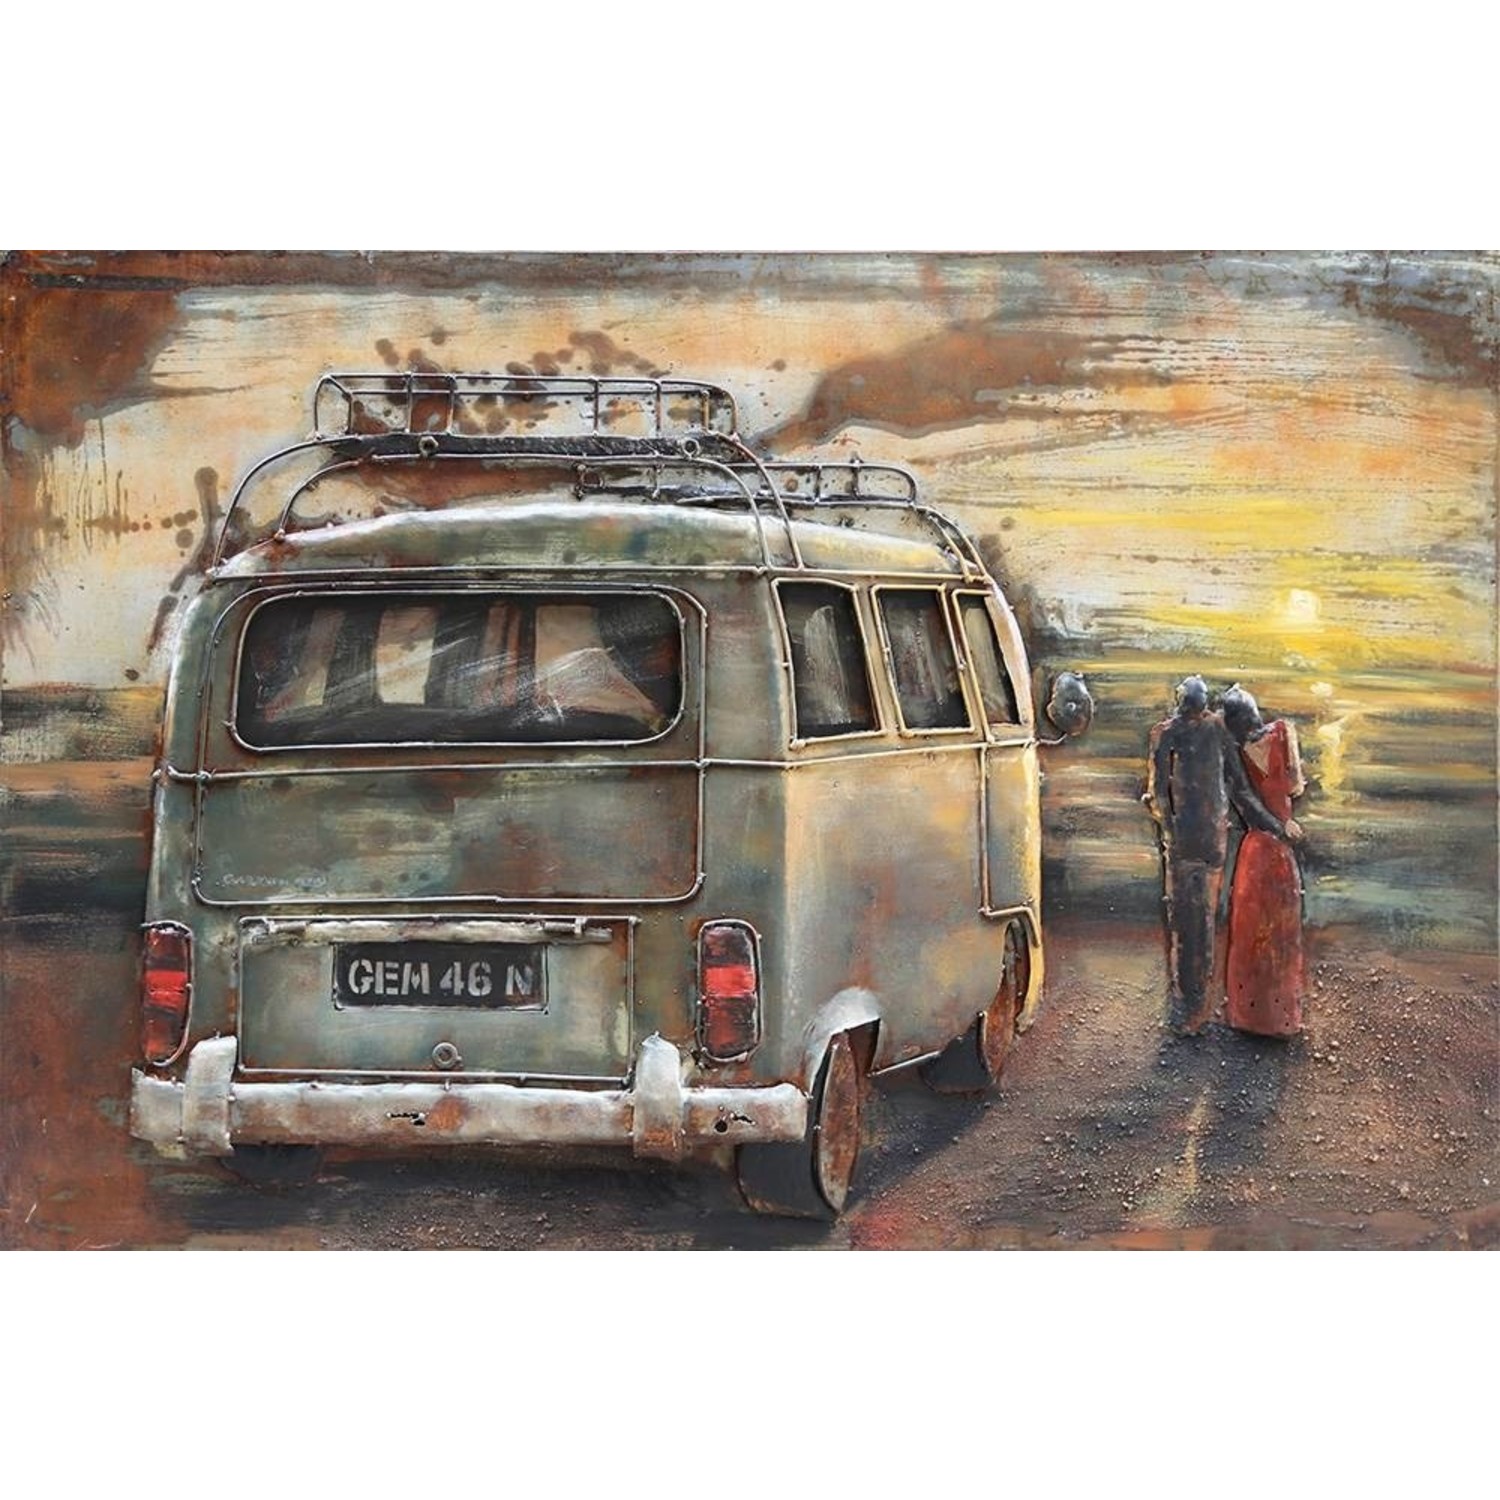 Gemarkeerd overschot Ziek persoon 3d schilderij metaal VW bus 1 80x120cm | Eliassen - Eliassen Home & Garden  Pleasure